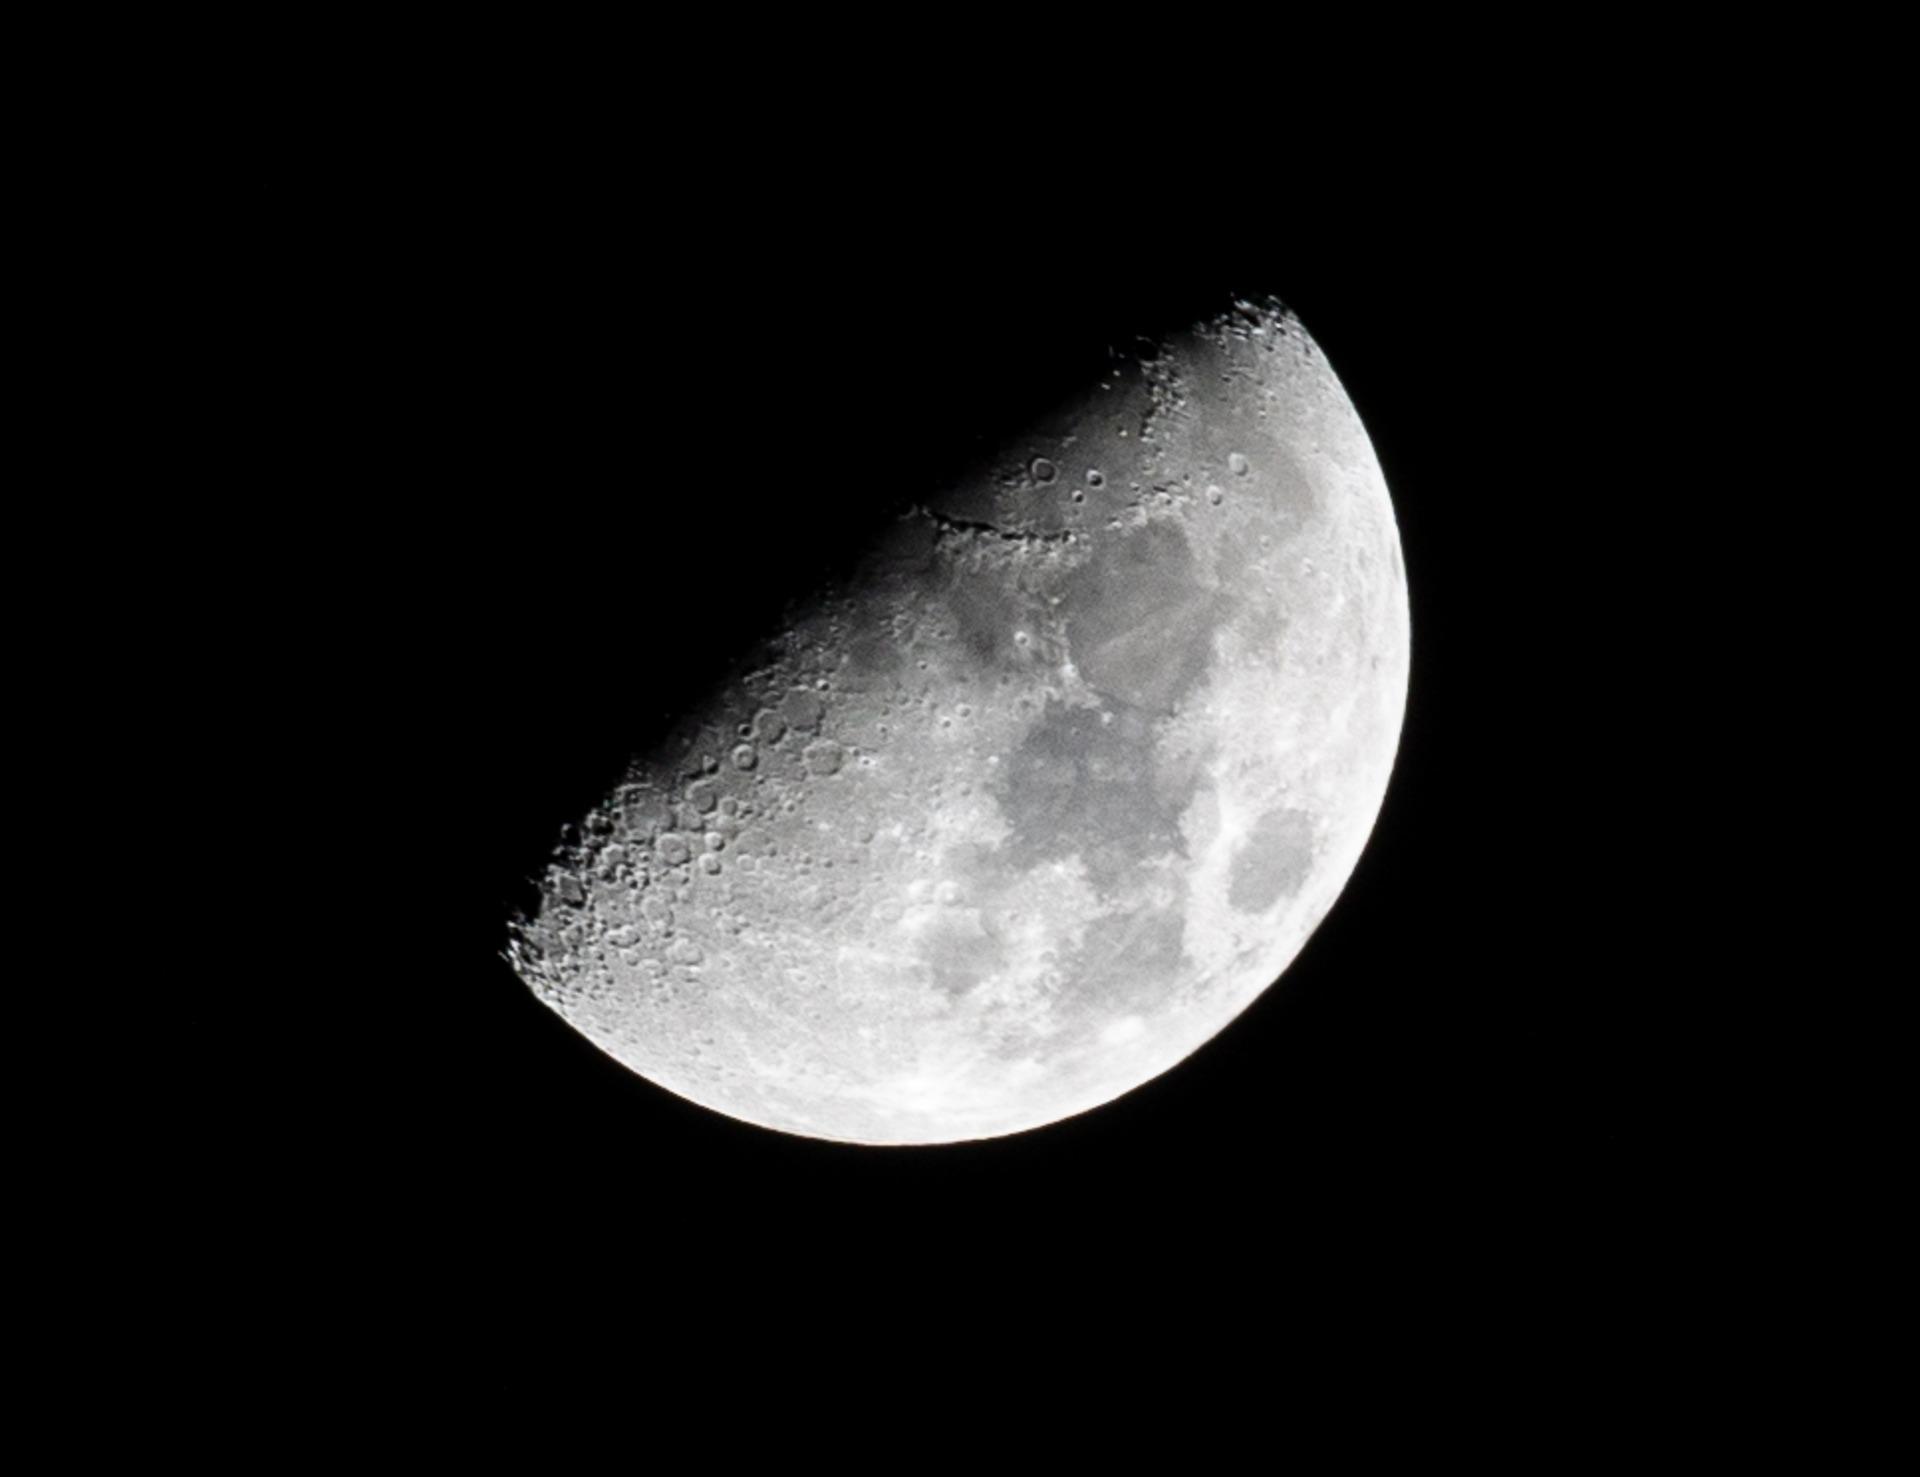 Mond fotografieren: Einstellungen, Kameras, Objektive und Tipps zur Mondfotografie 2